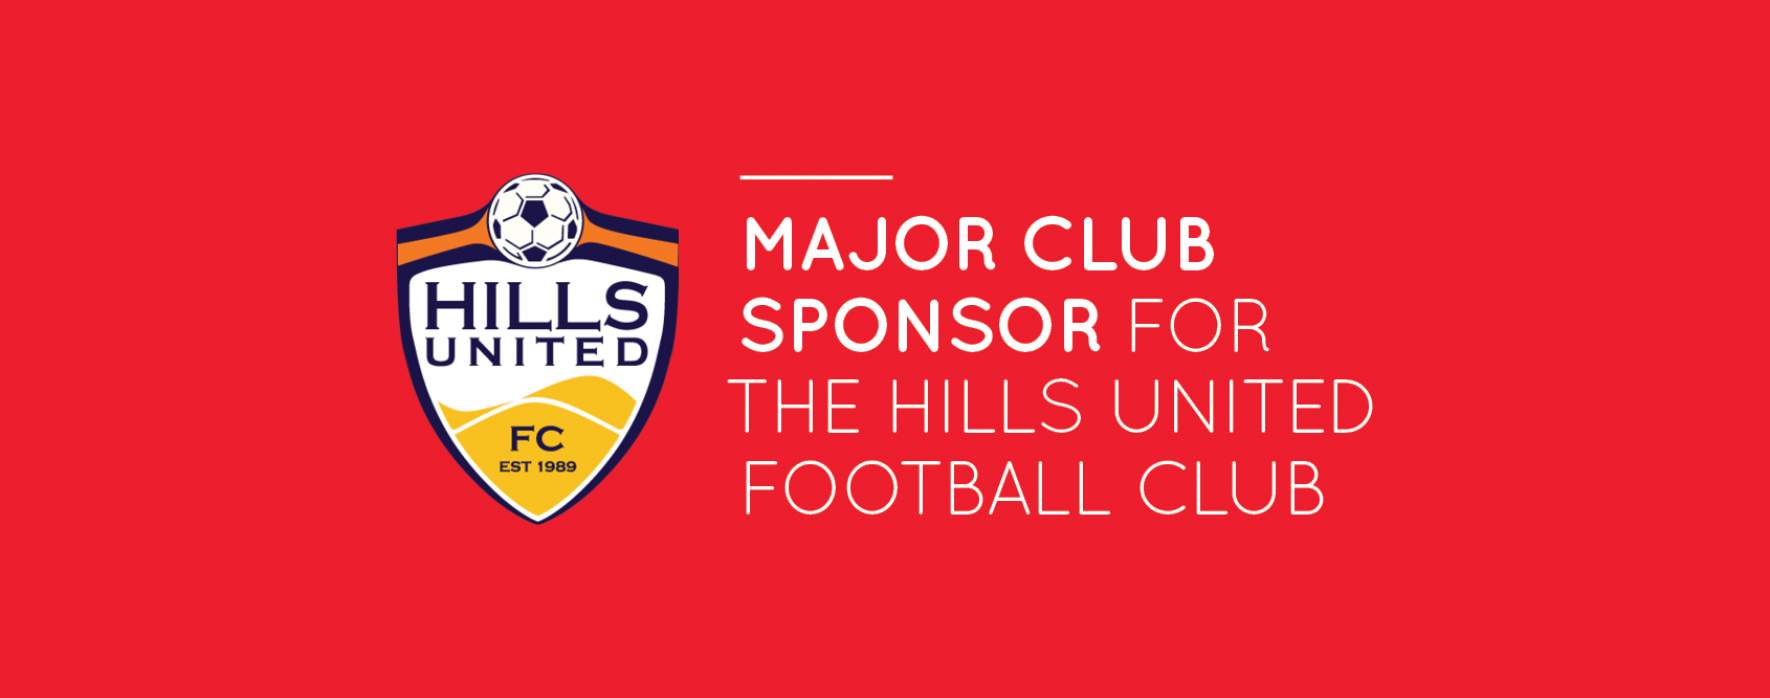 mojo homes major club sponsor for the hills united football club 